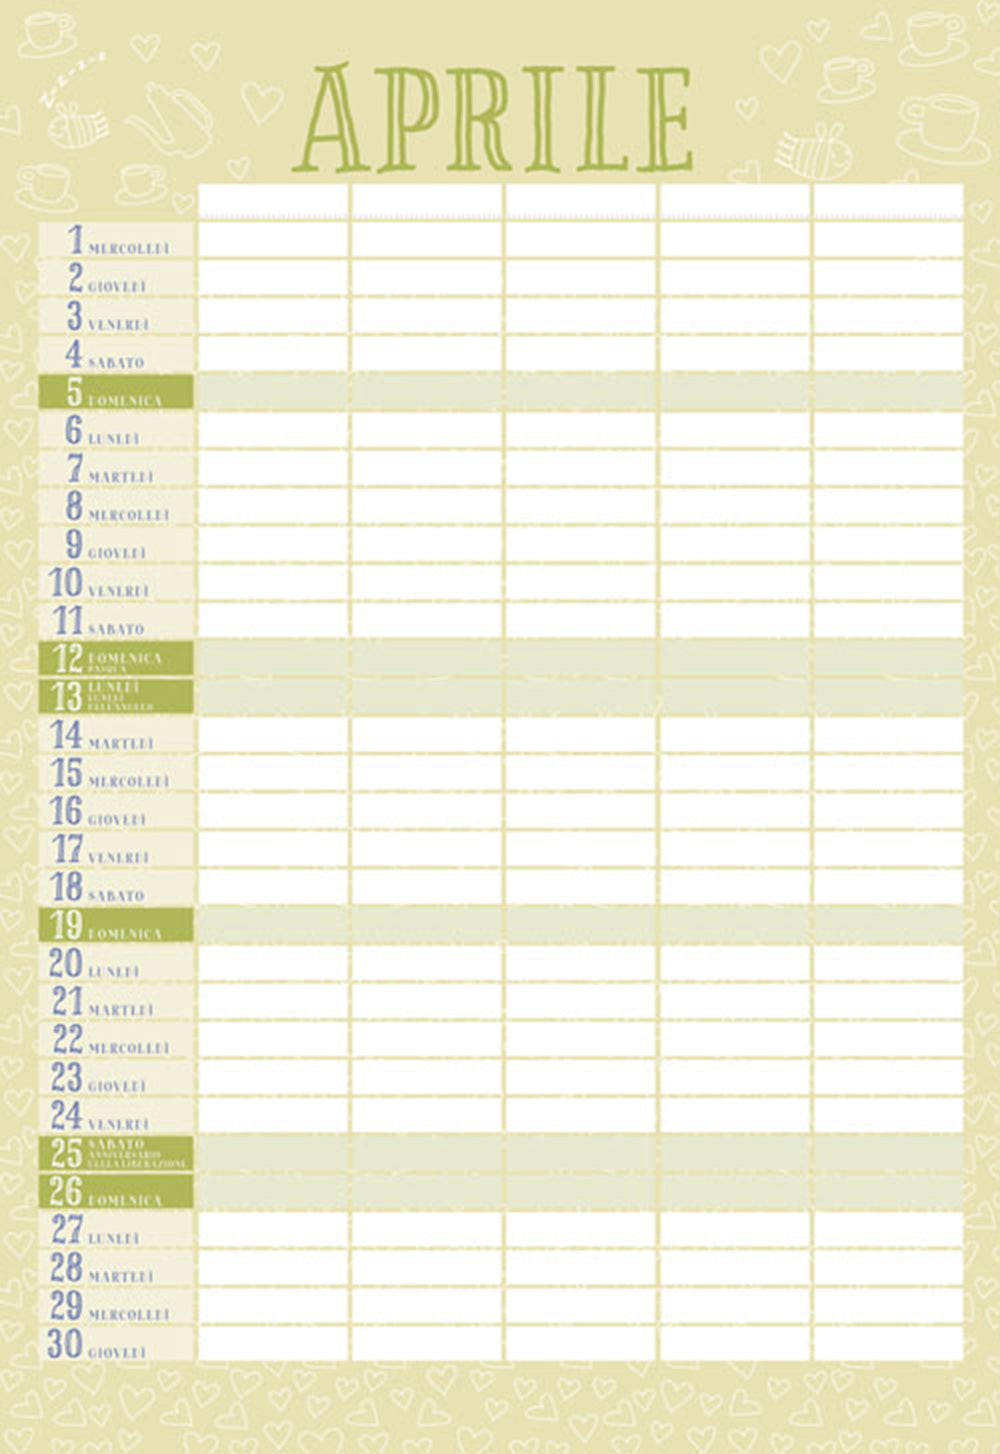 Calendario della famiglia 2020::per organizzare e tenere sotto controllo tutti gli impegni